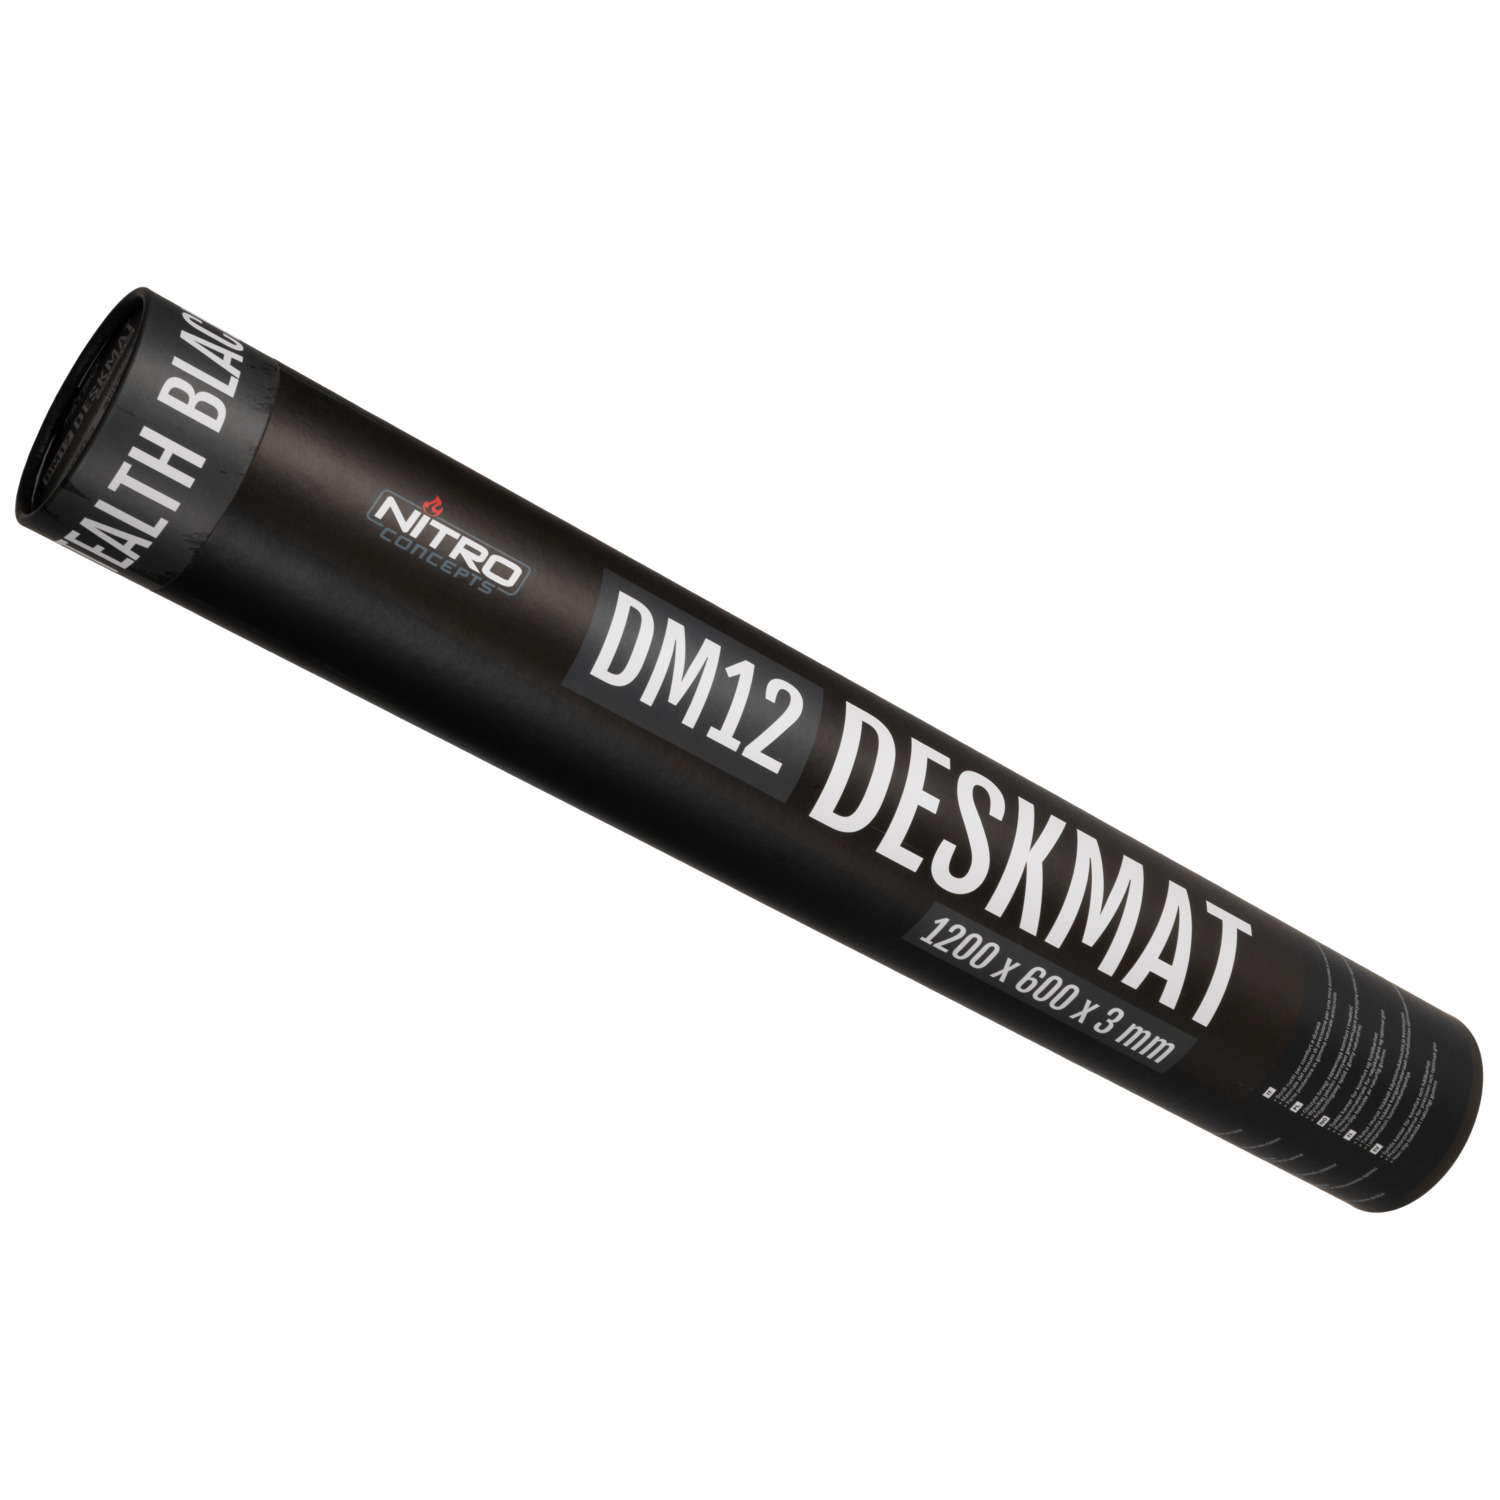 Deskmat DM12 - 1200x600mm - STEALTH BLACK